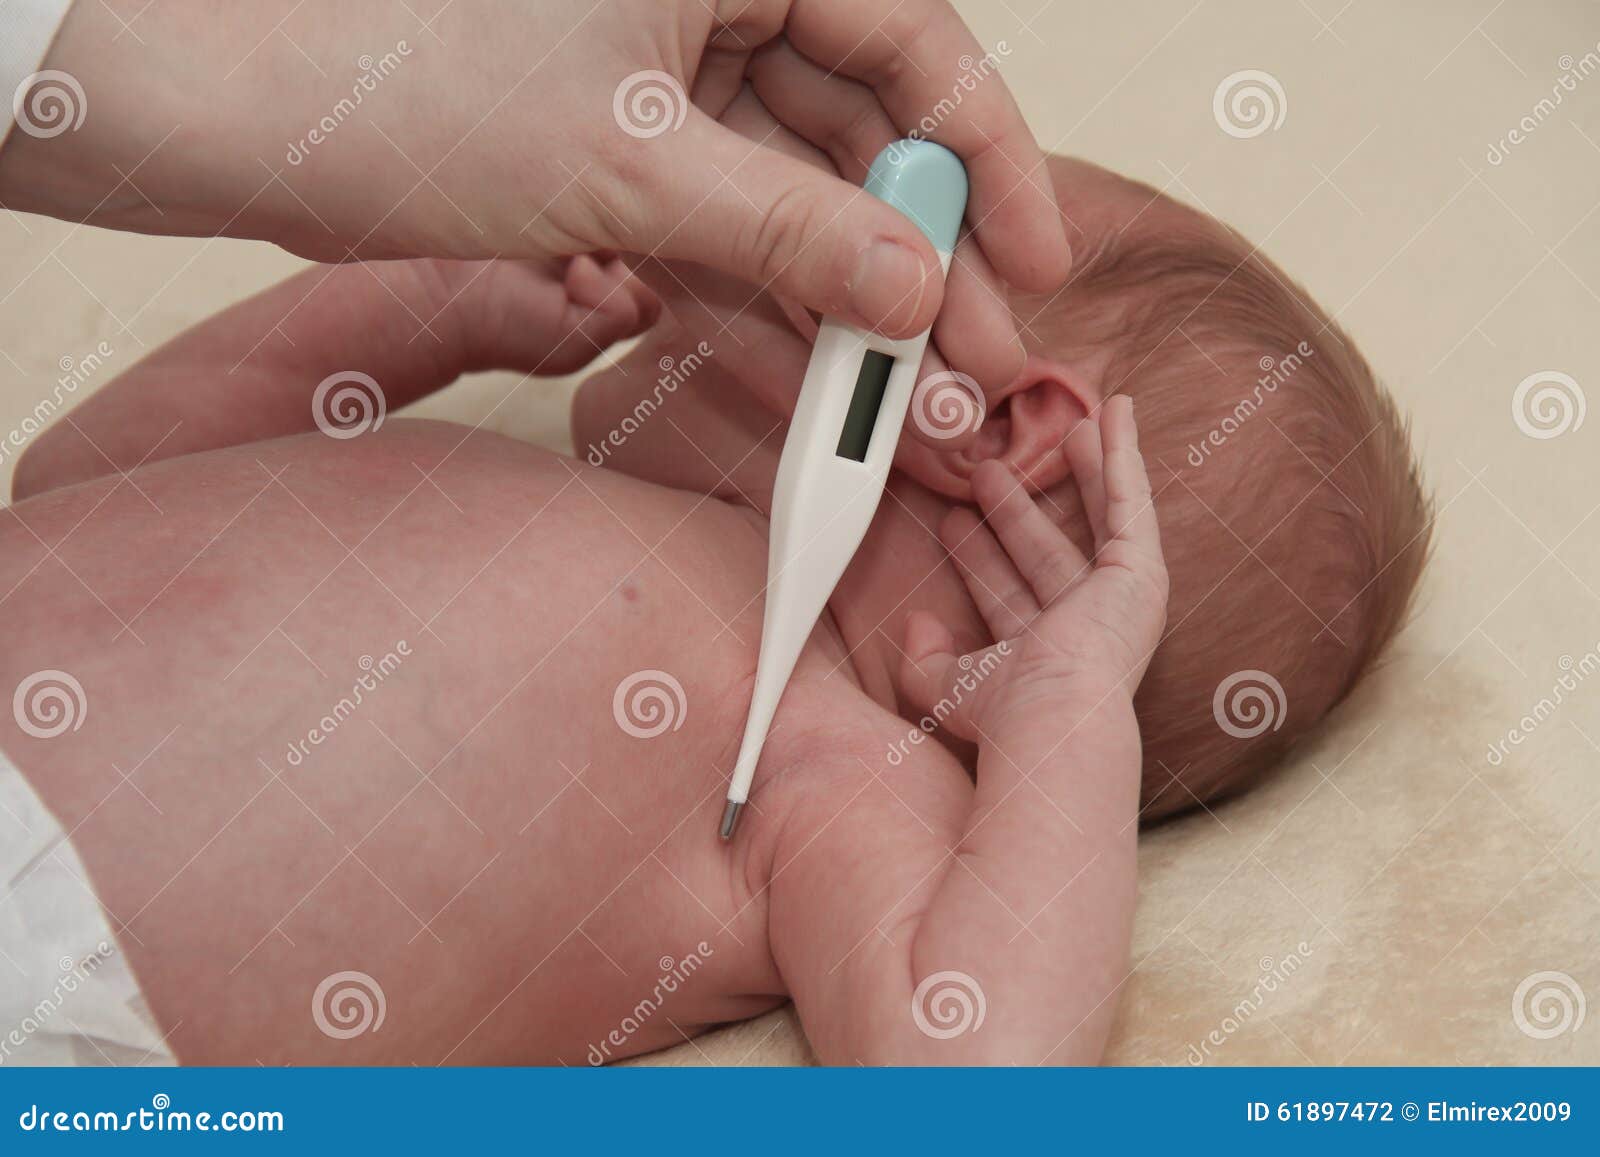 Новорожденному ректально. Термометрия новорожденного. Ректальная термометрия новорожденных. Градусник в ягодицу детям.